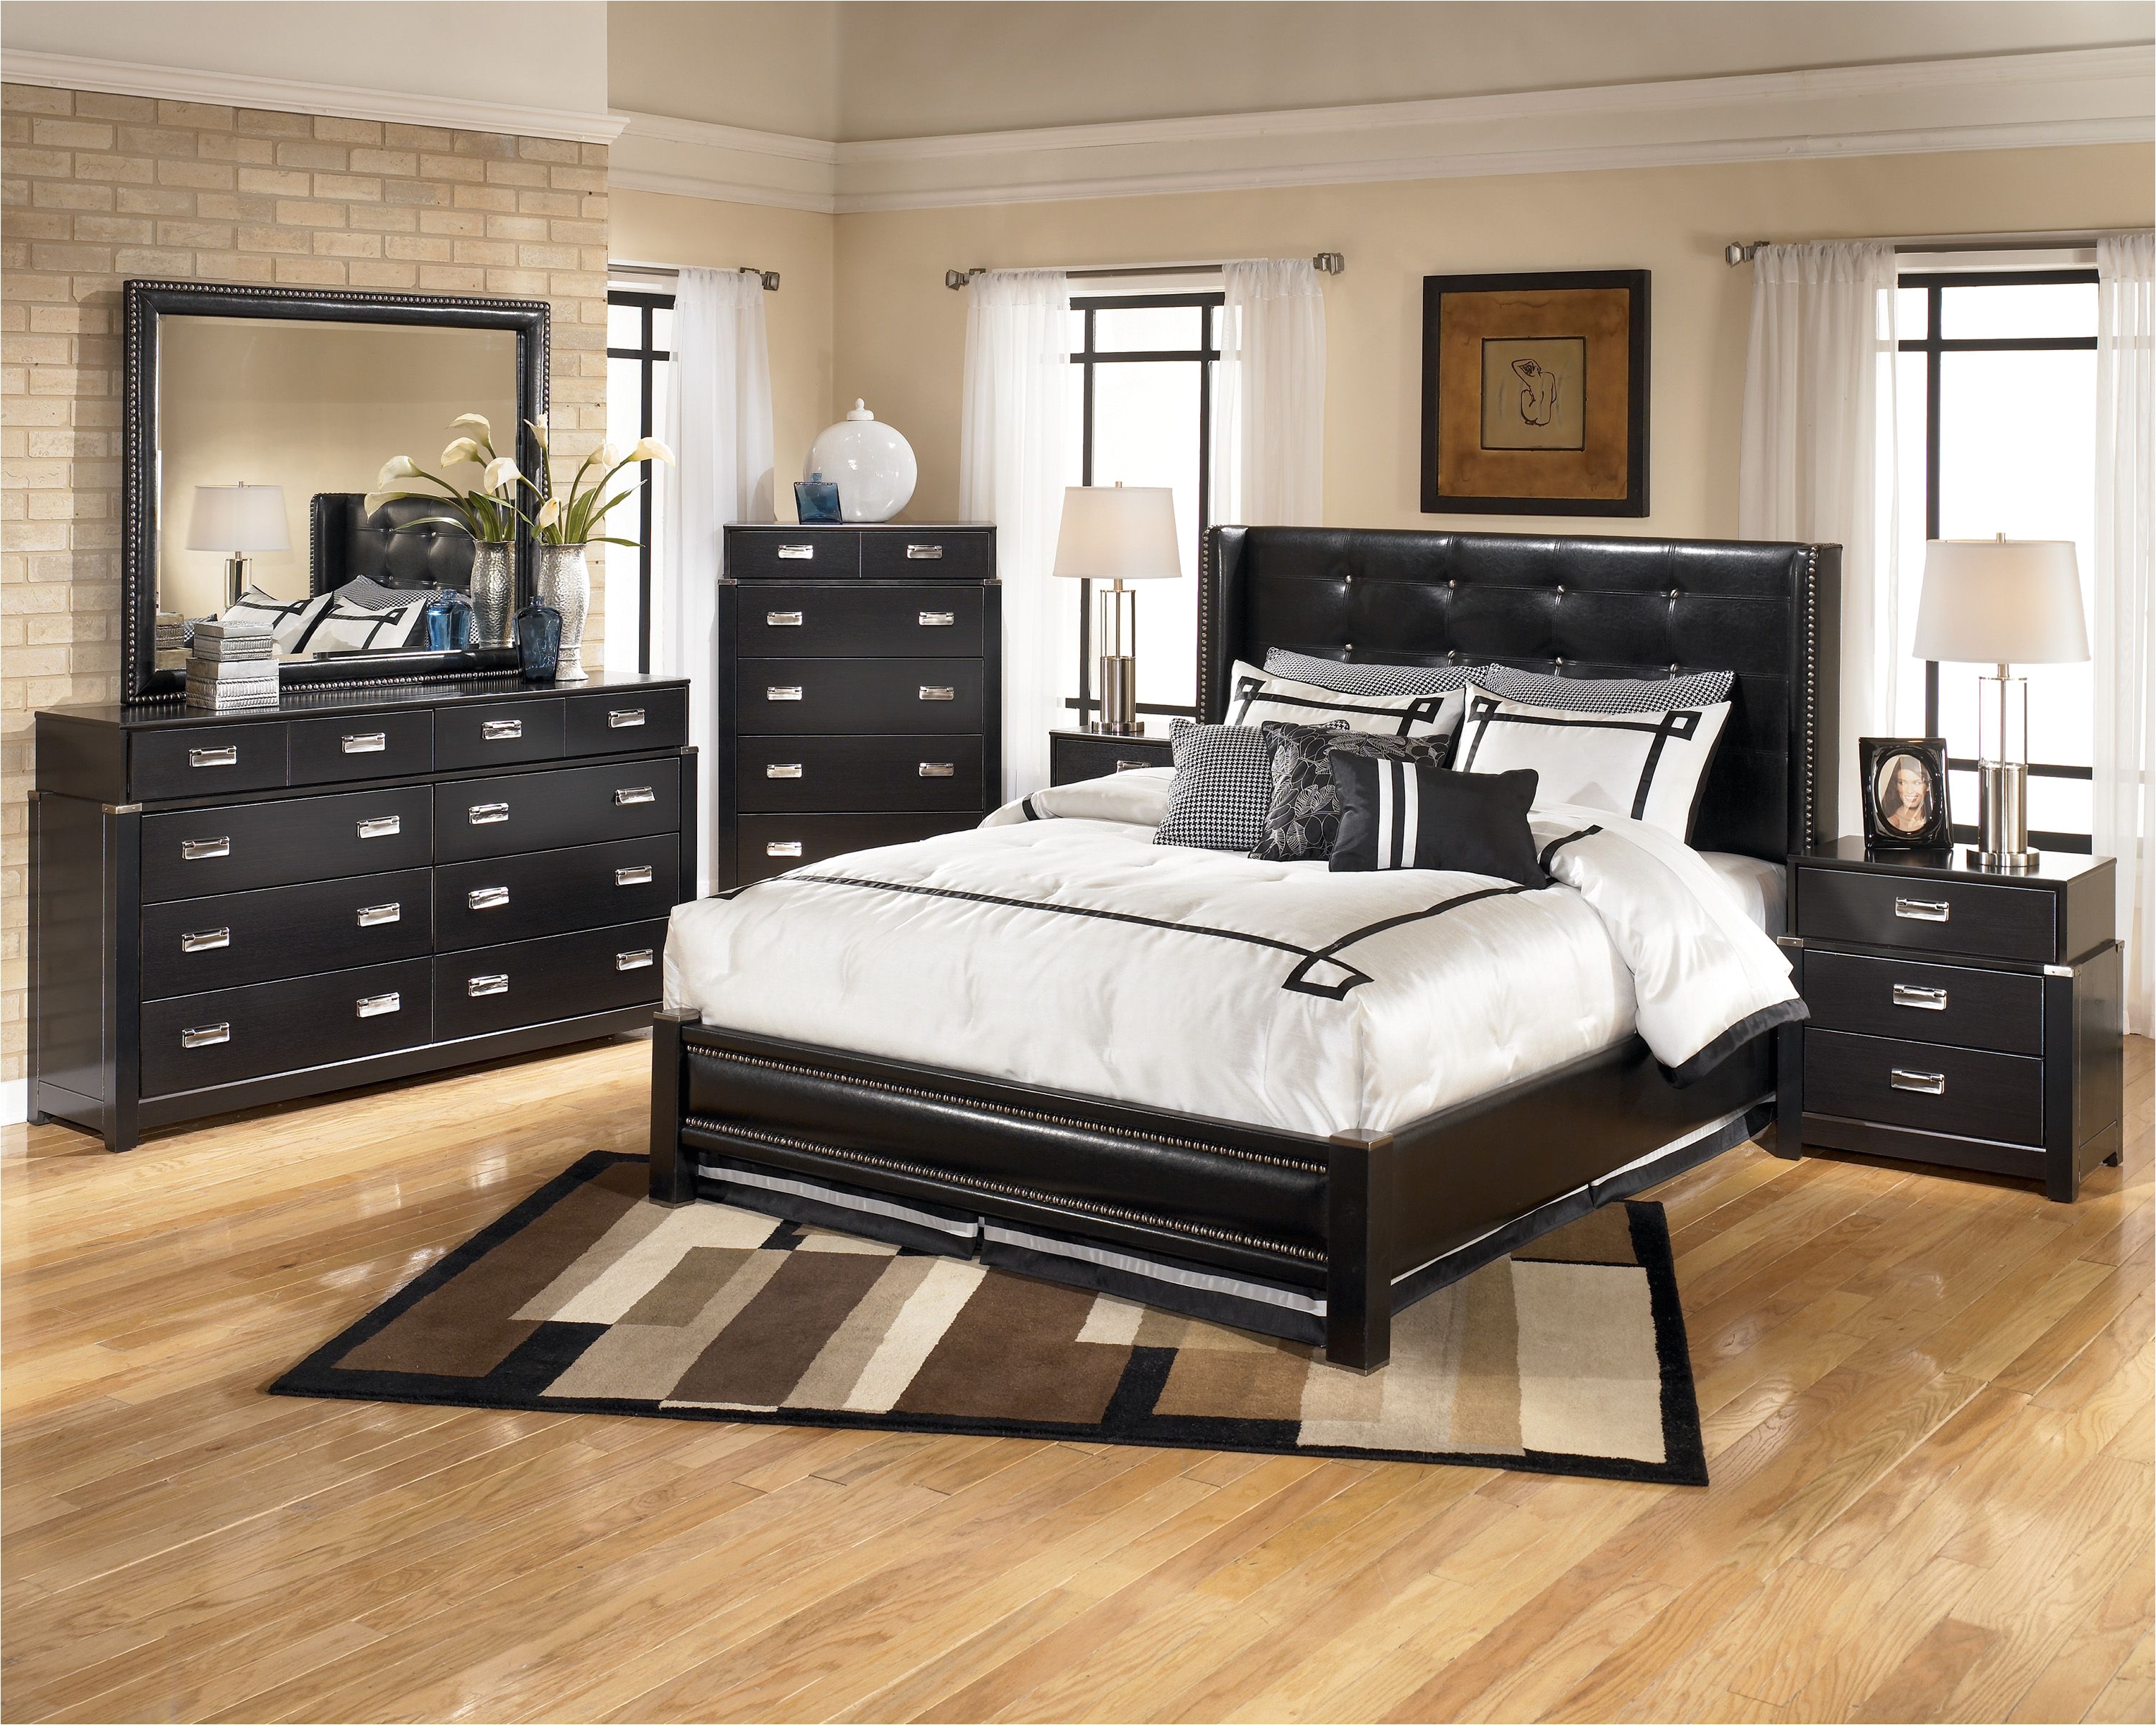 Queen Size Bedroom Furniture Sets Bedroom Loft Bedroom Furniture Iron Bedroom Furniture Queen Size Bed